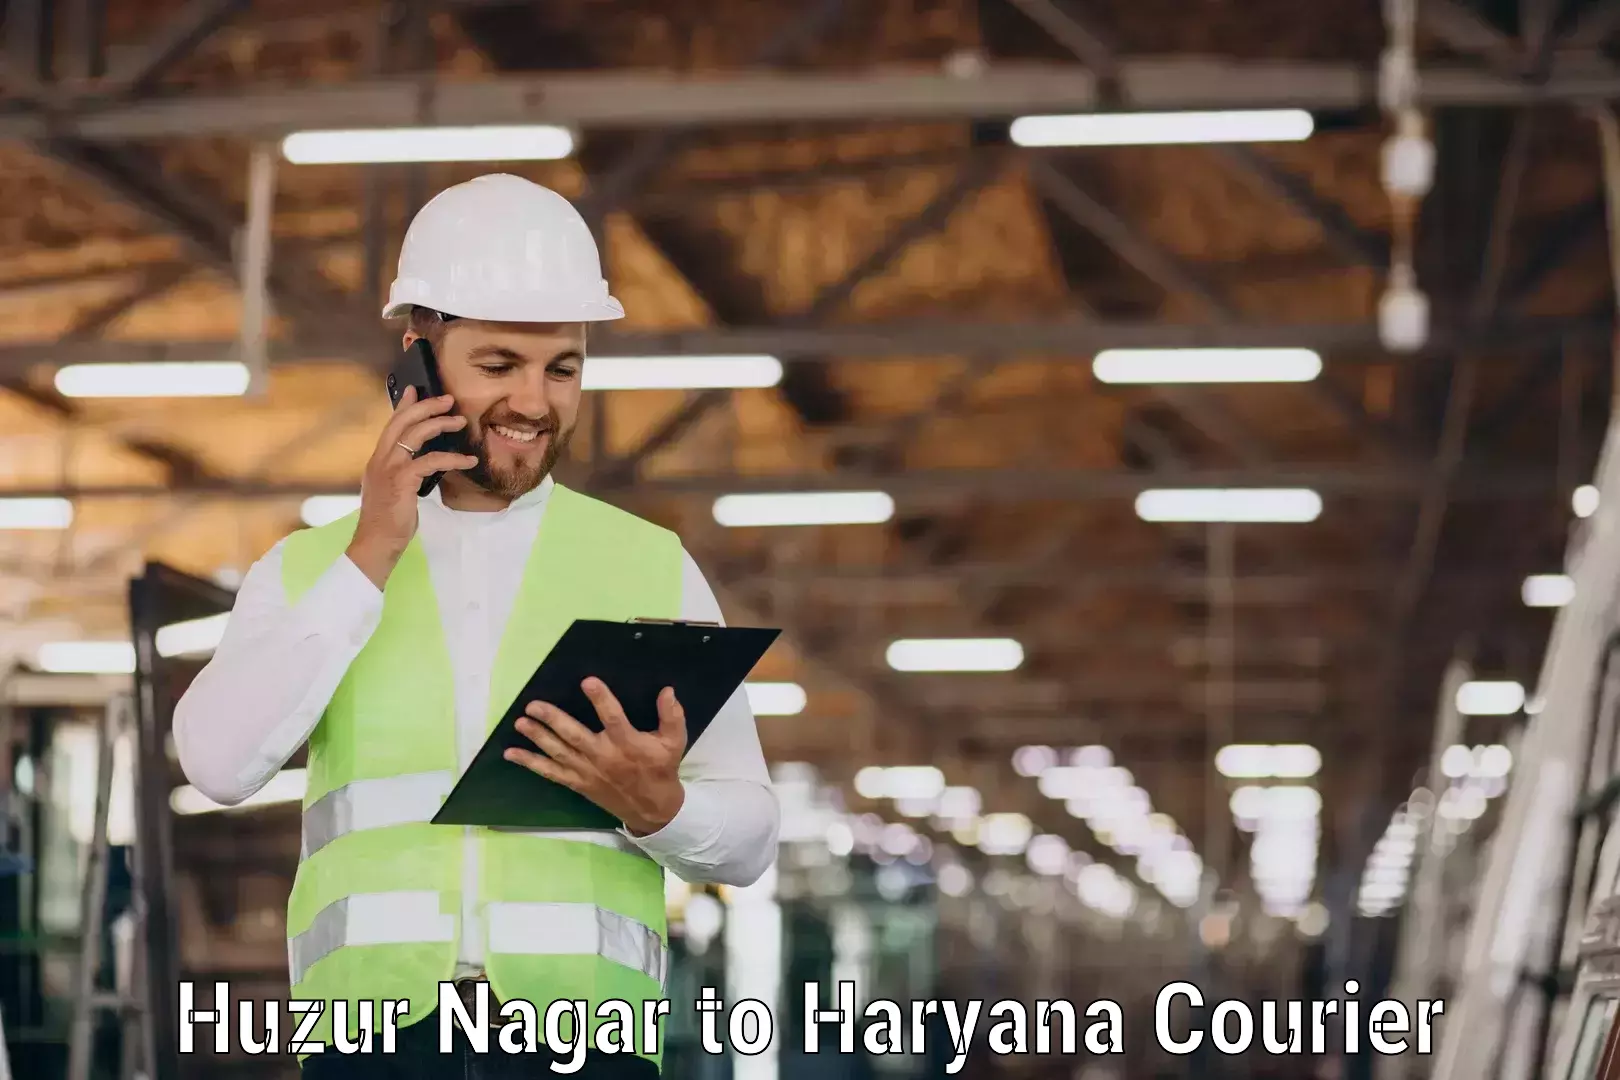 Next-generation courier services Huzur Nagar to Gurgaon